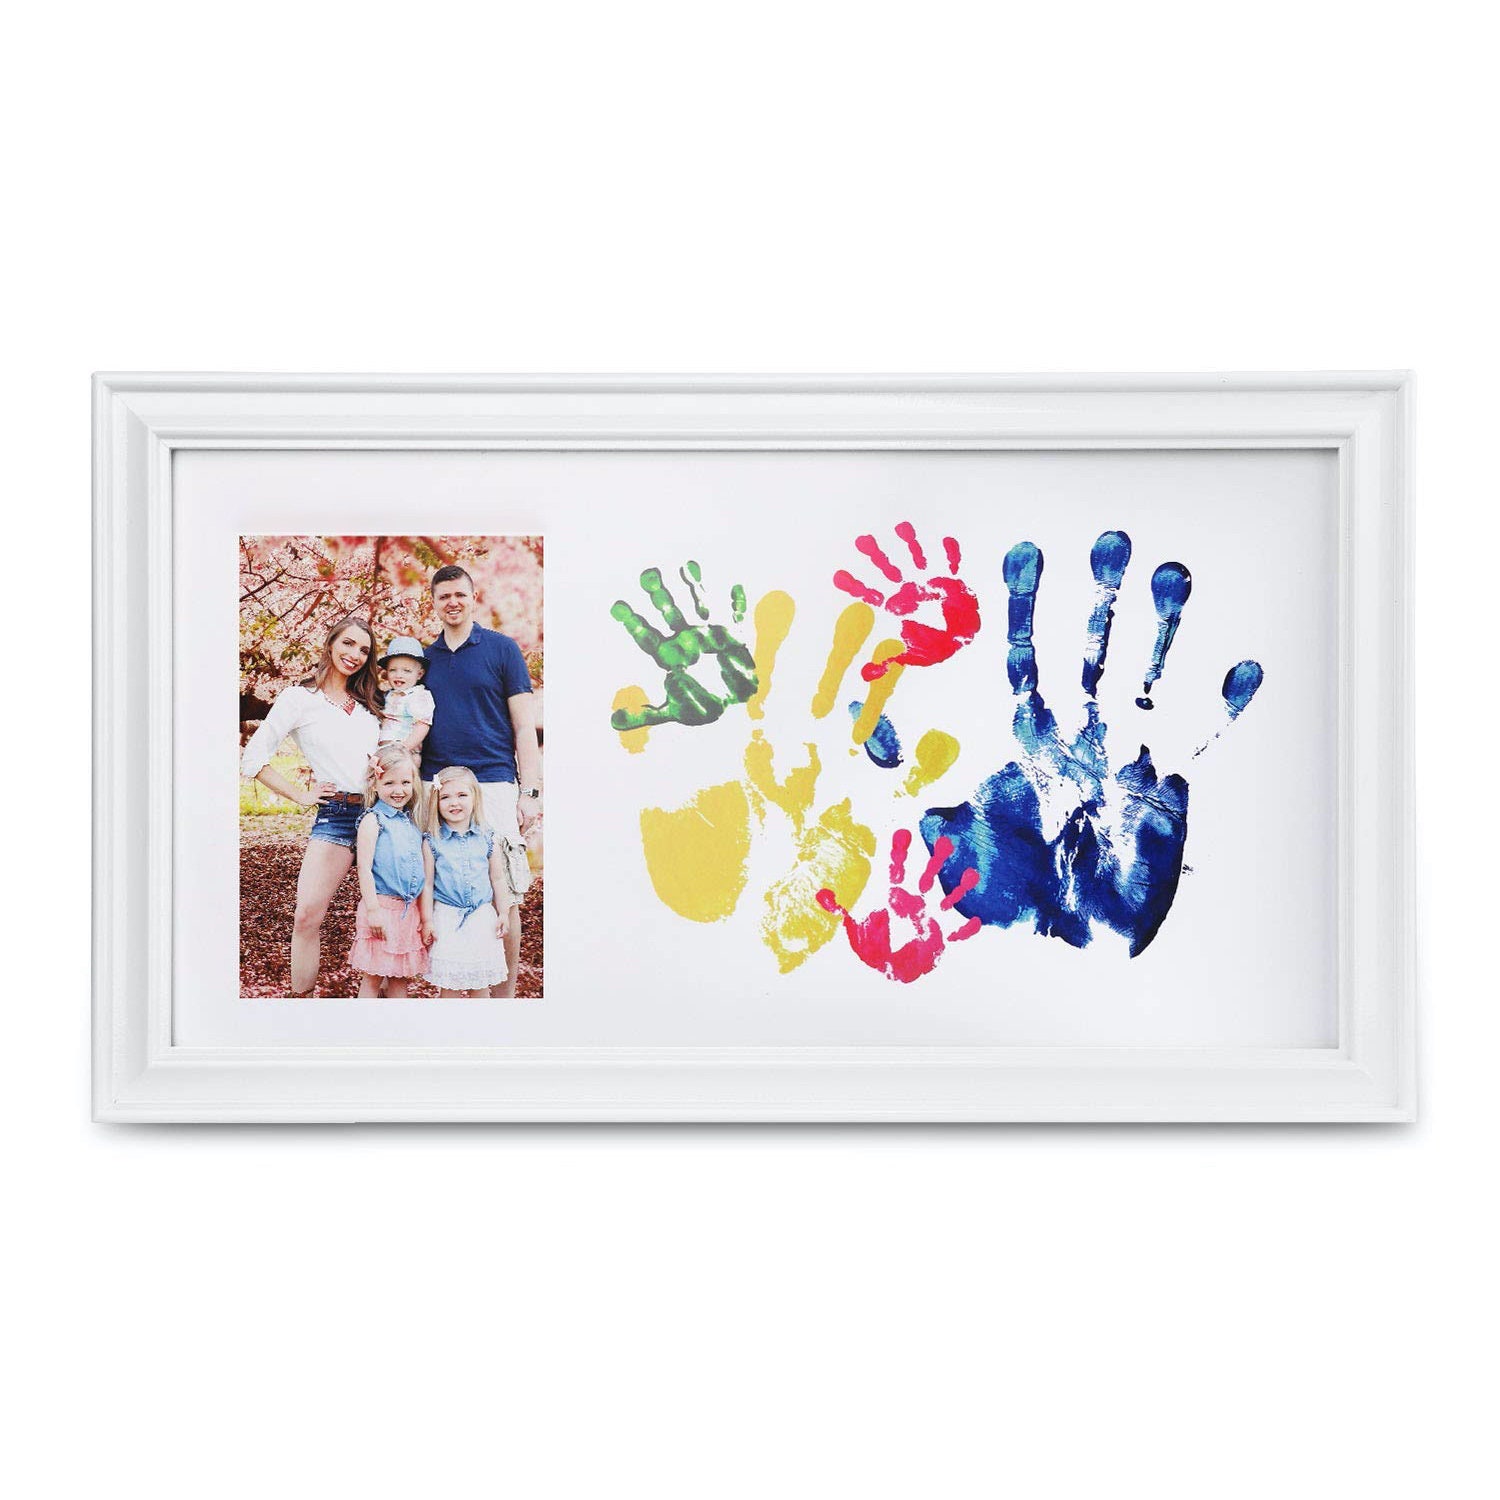 DAMLUX Family Handprint Kit,DIY Art Print Keepsake Frame Keepsake Baby Hand  and Footprint Kit,Personalized for New Mom Couples Family